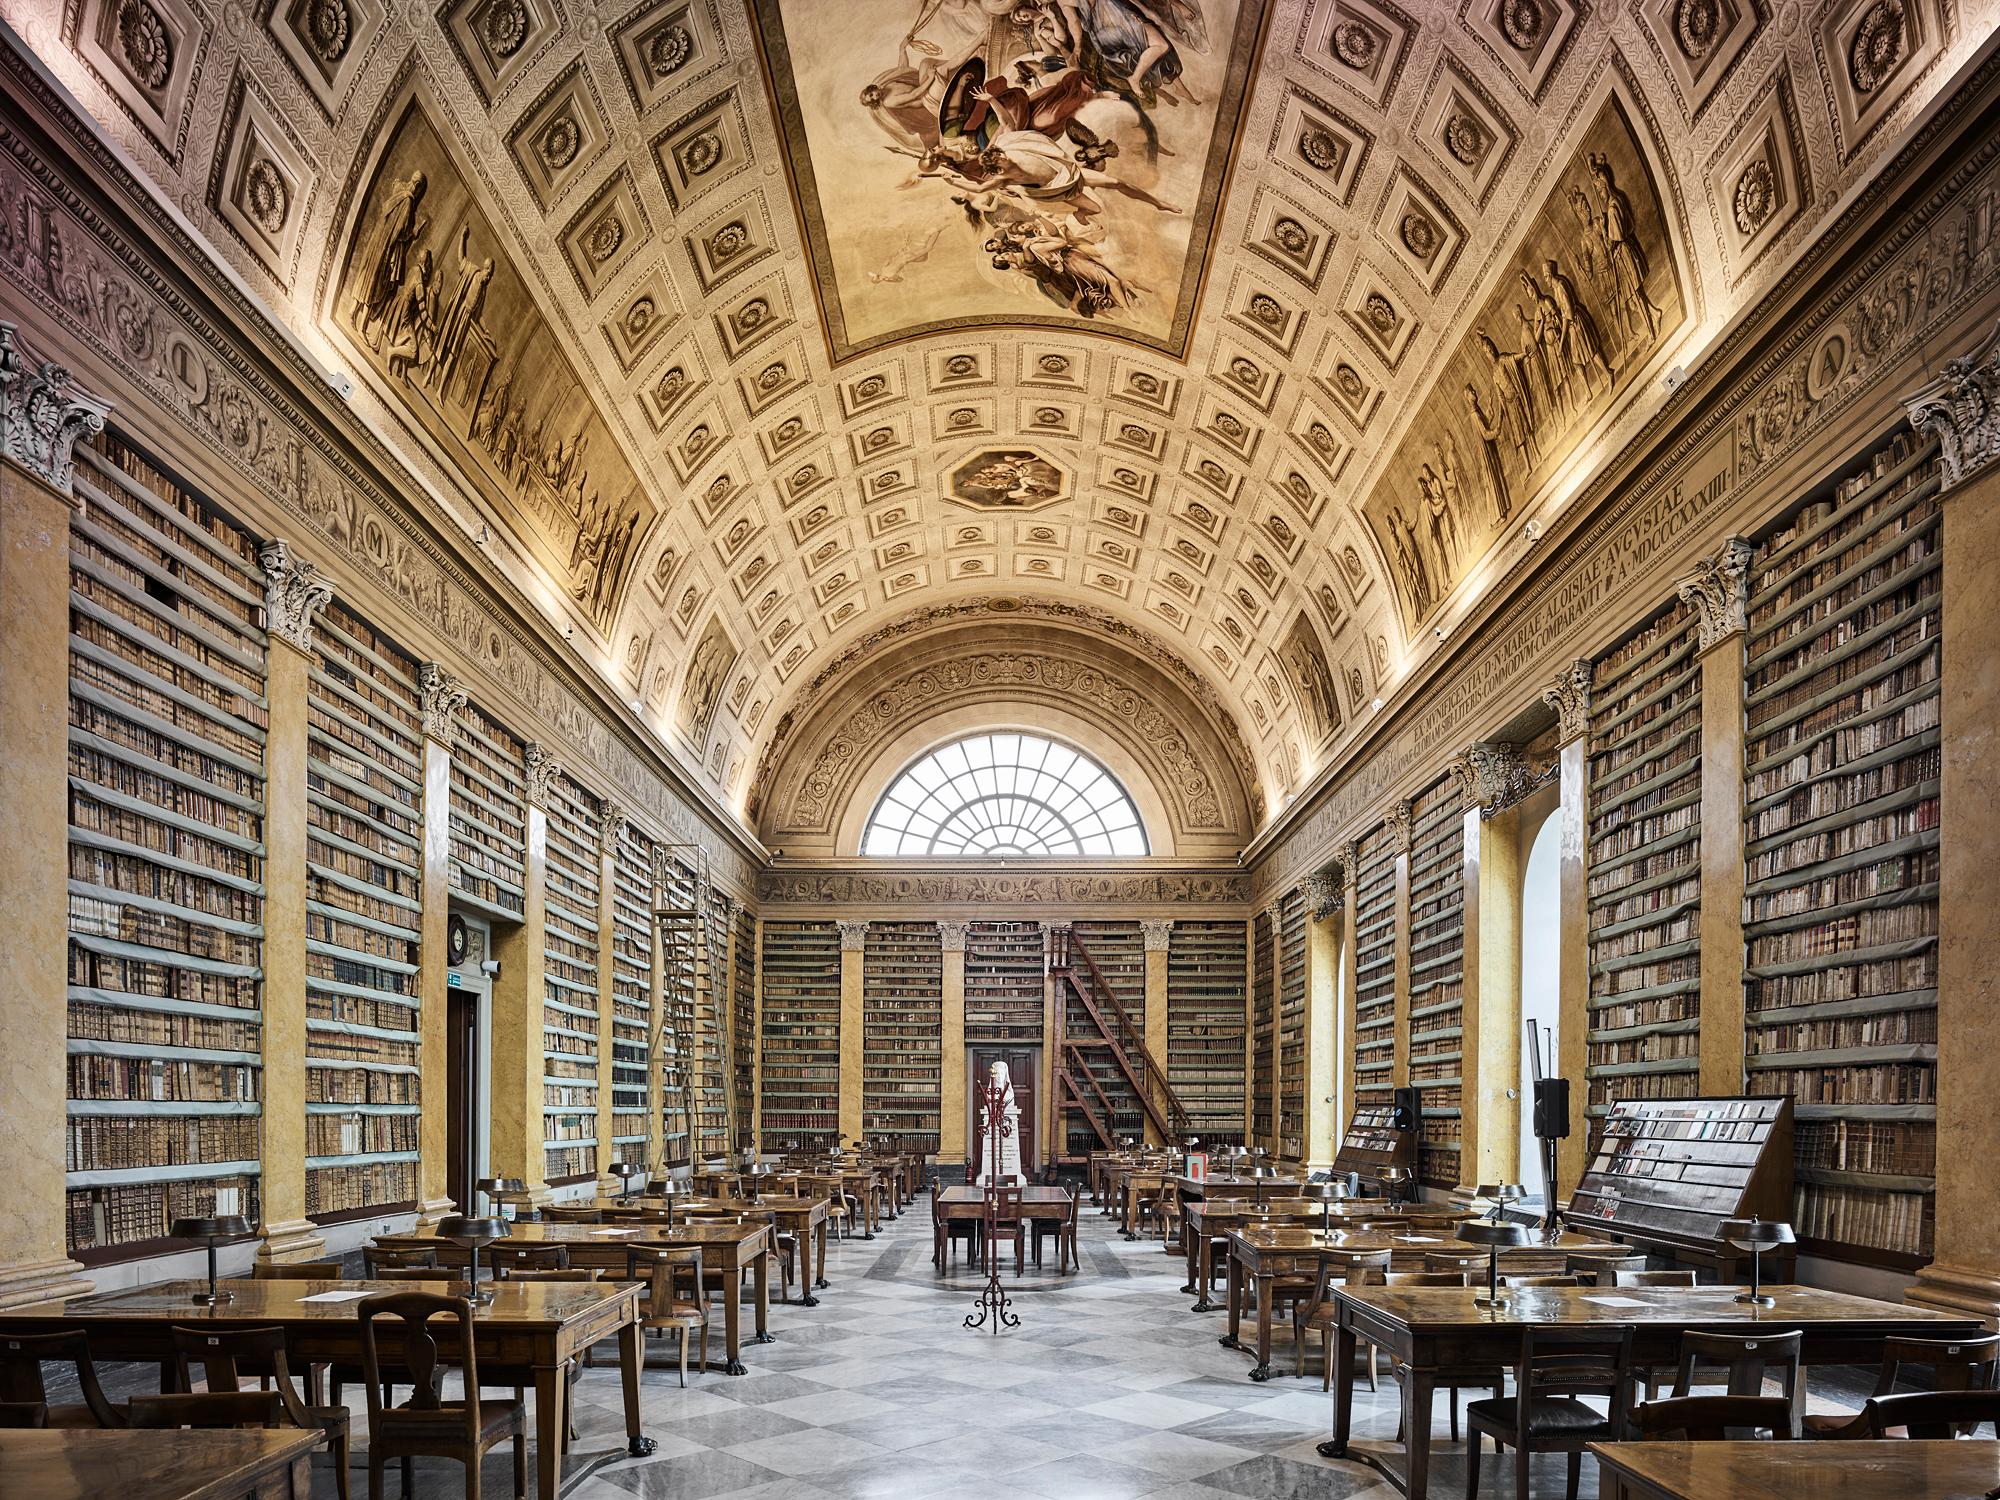  Library, Parma,  Italy (44" X 55")